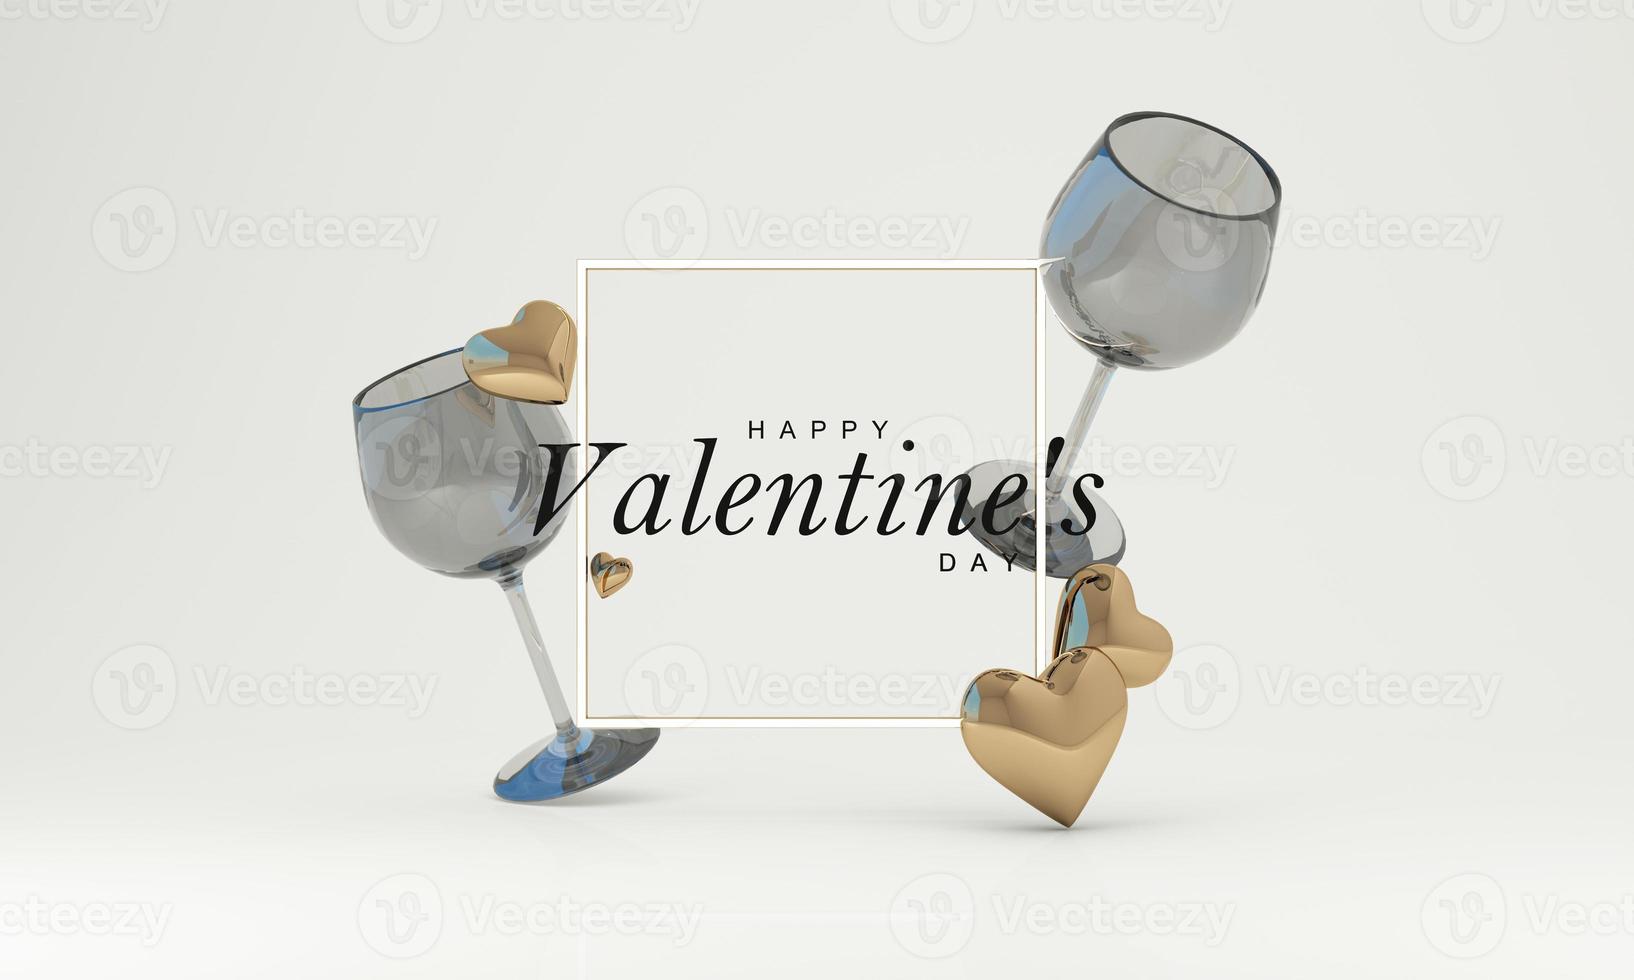 tapete im konzept des monats der liebe und des valentinstags. enthalten Herzformen und Luftballons für Hochzeitskarten oder Werbung. auf weißem Hintergrund mit einem Glas Wein. 3D-Rendering. foto